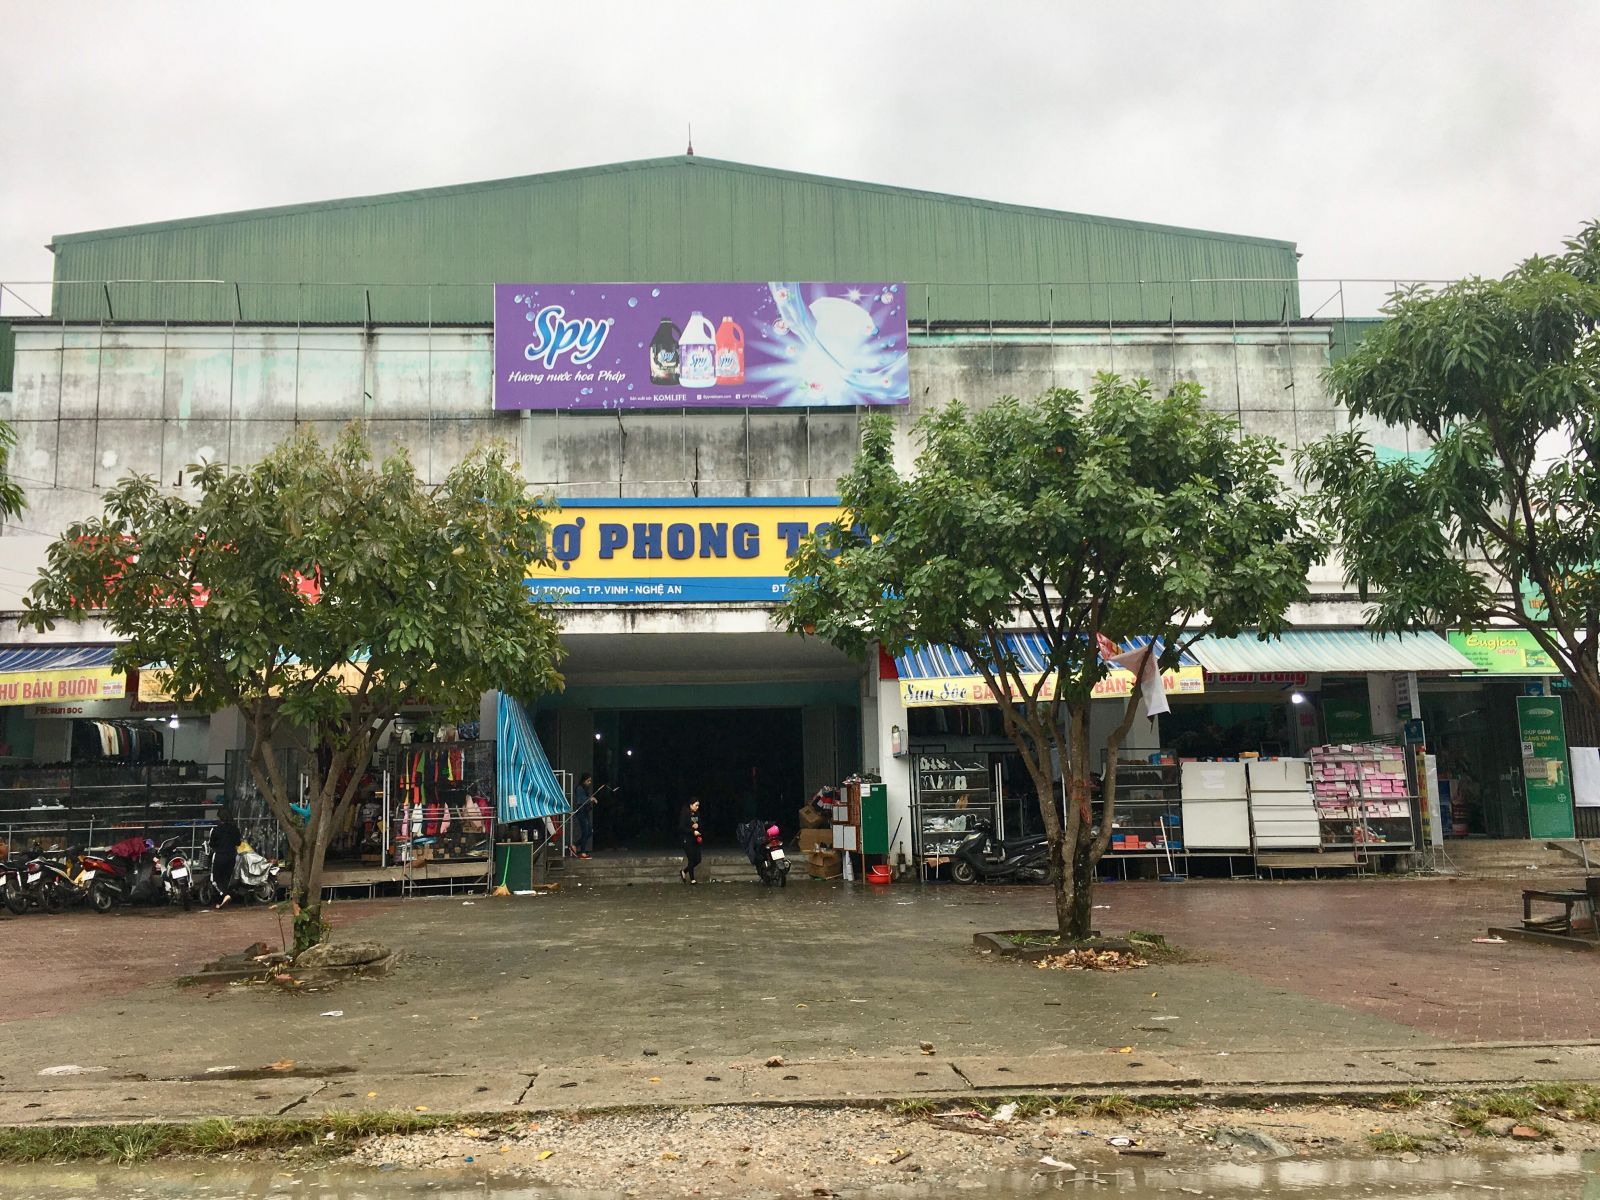 Ảnh: Khu kinh doanh dịch vụ thương mại phía ngoài chợ Phong Toàn, do HTX Phong Toàn quản lý tại phường Hà Huy Tập, TP. Vinh